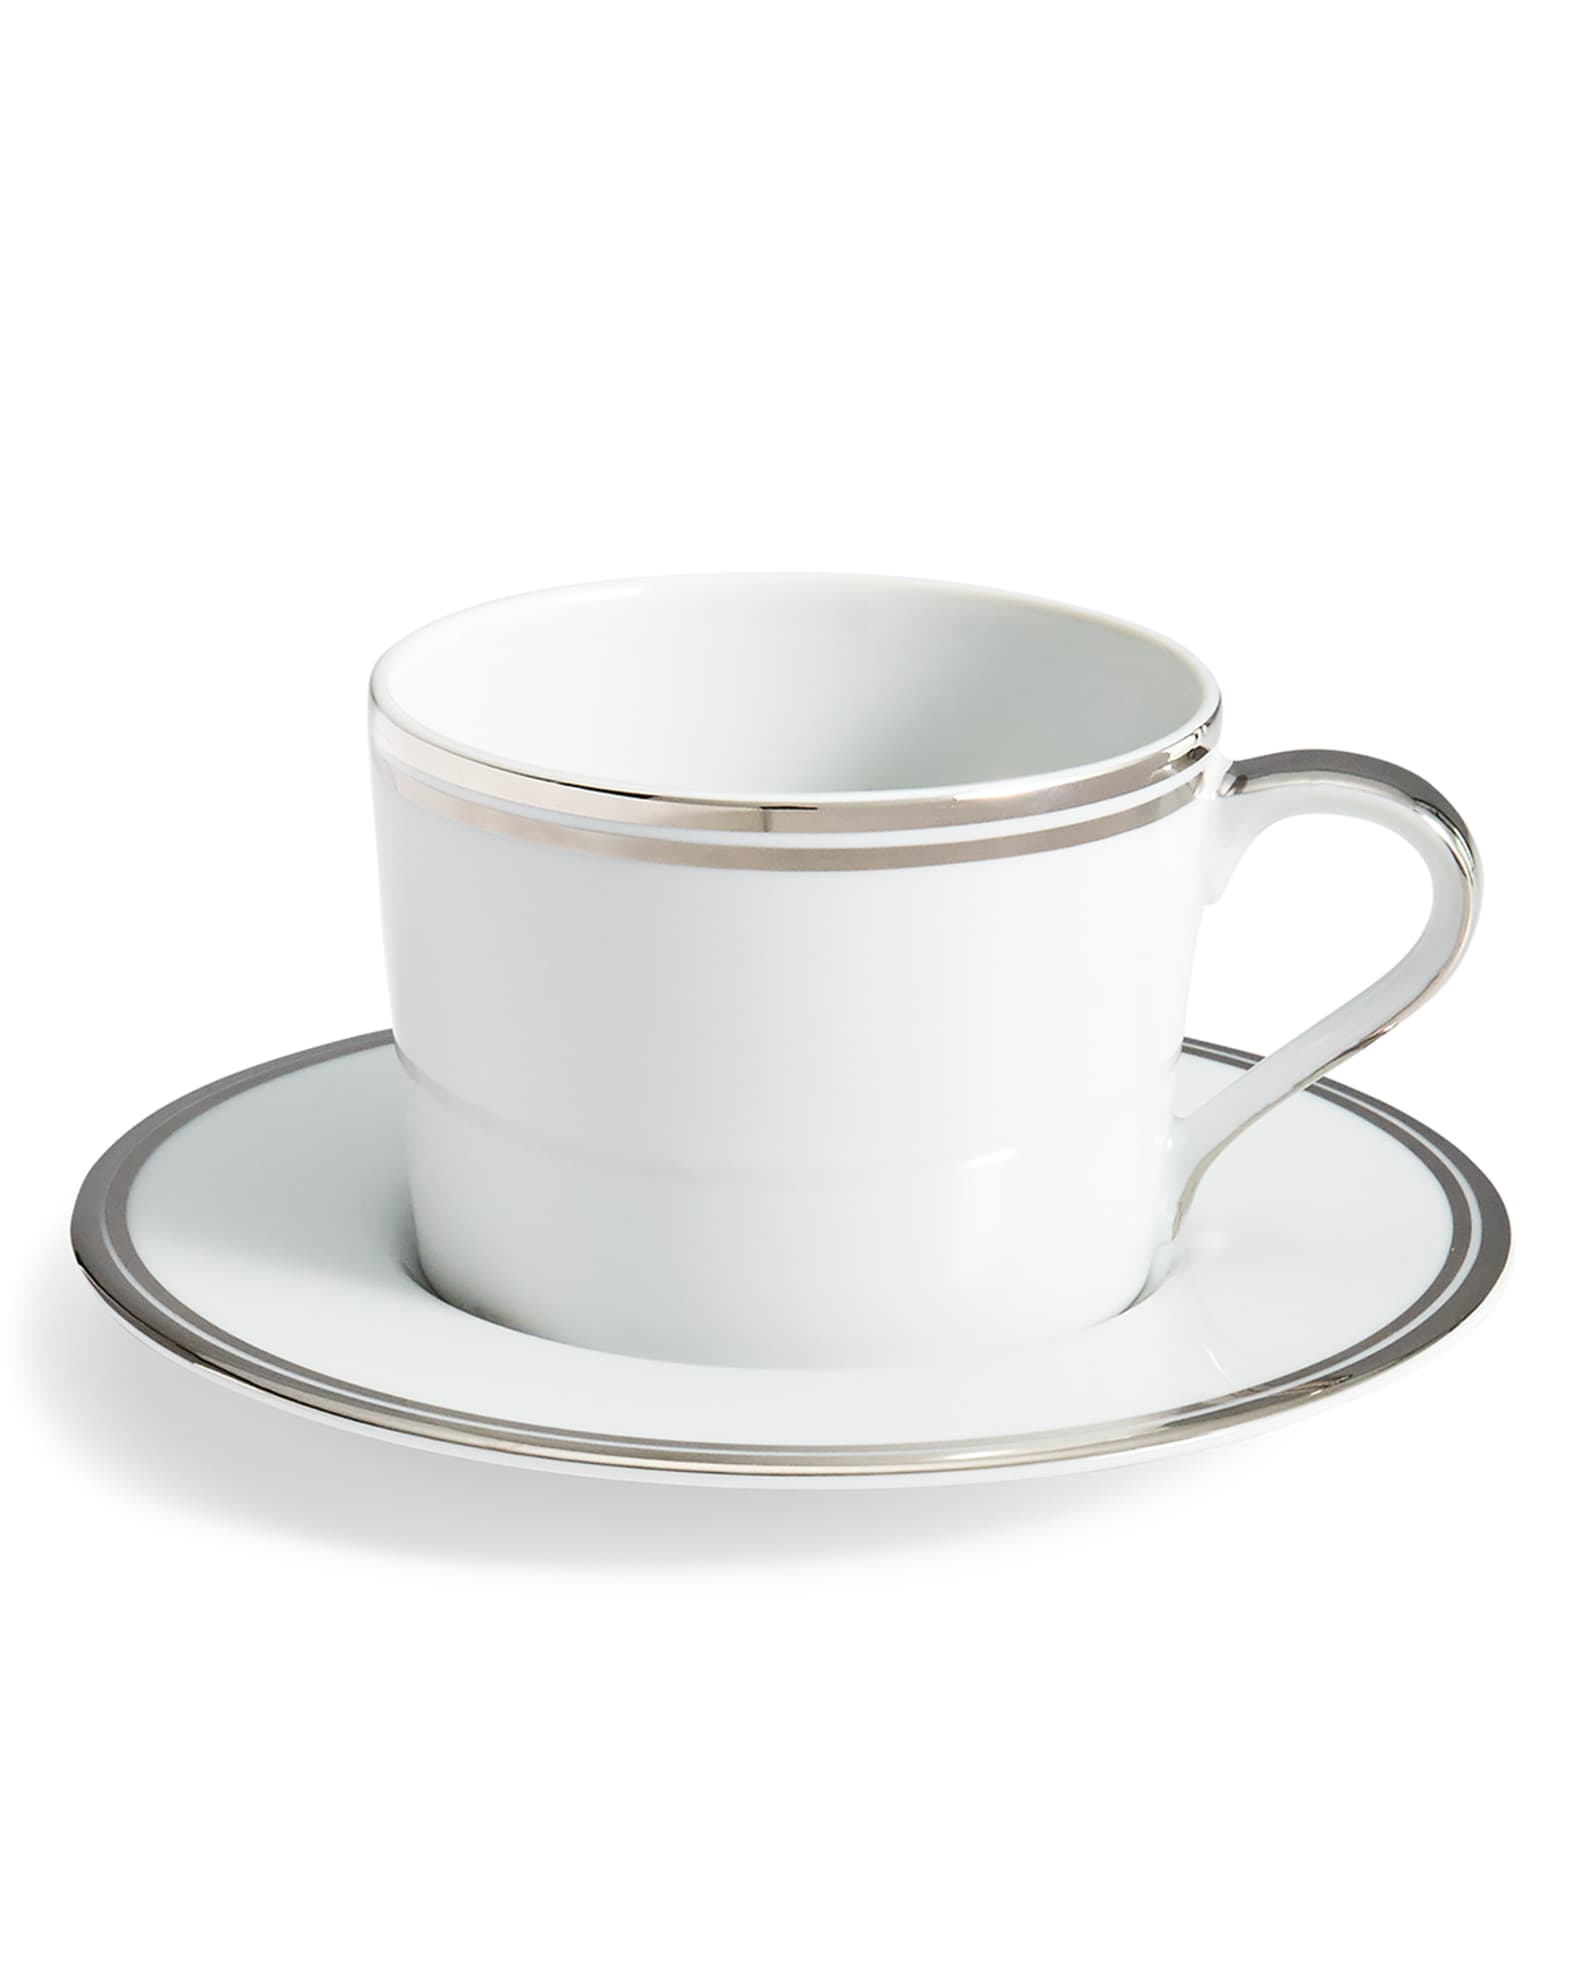 Ralph Lauren Home Wilshire Tea Cup and Saucer, Platinum